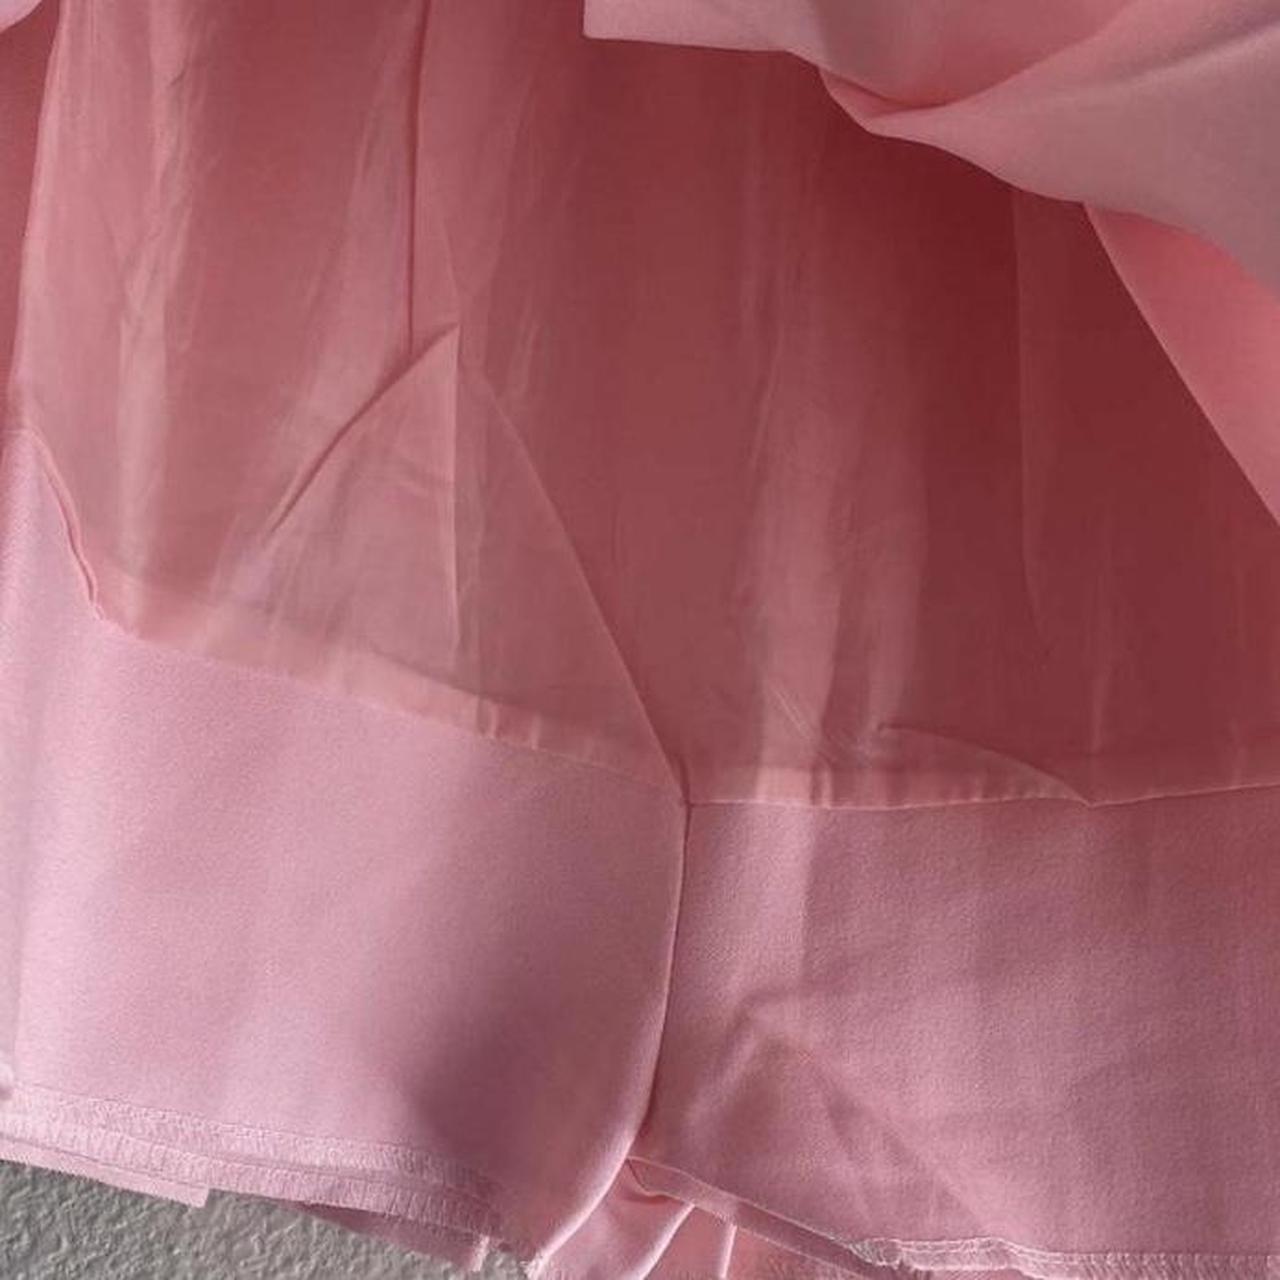 pink tennis skirt ໒꒰ྀིっ˕ -｡꒱ྀི১ ᡴꪫ classic... - Depop